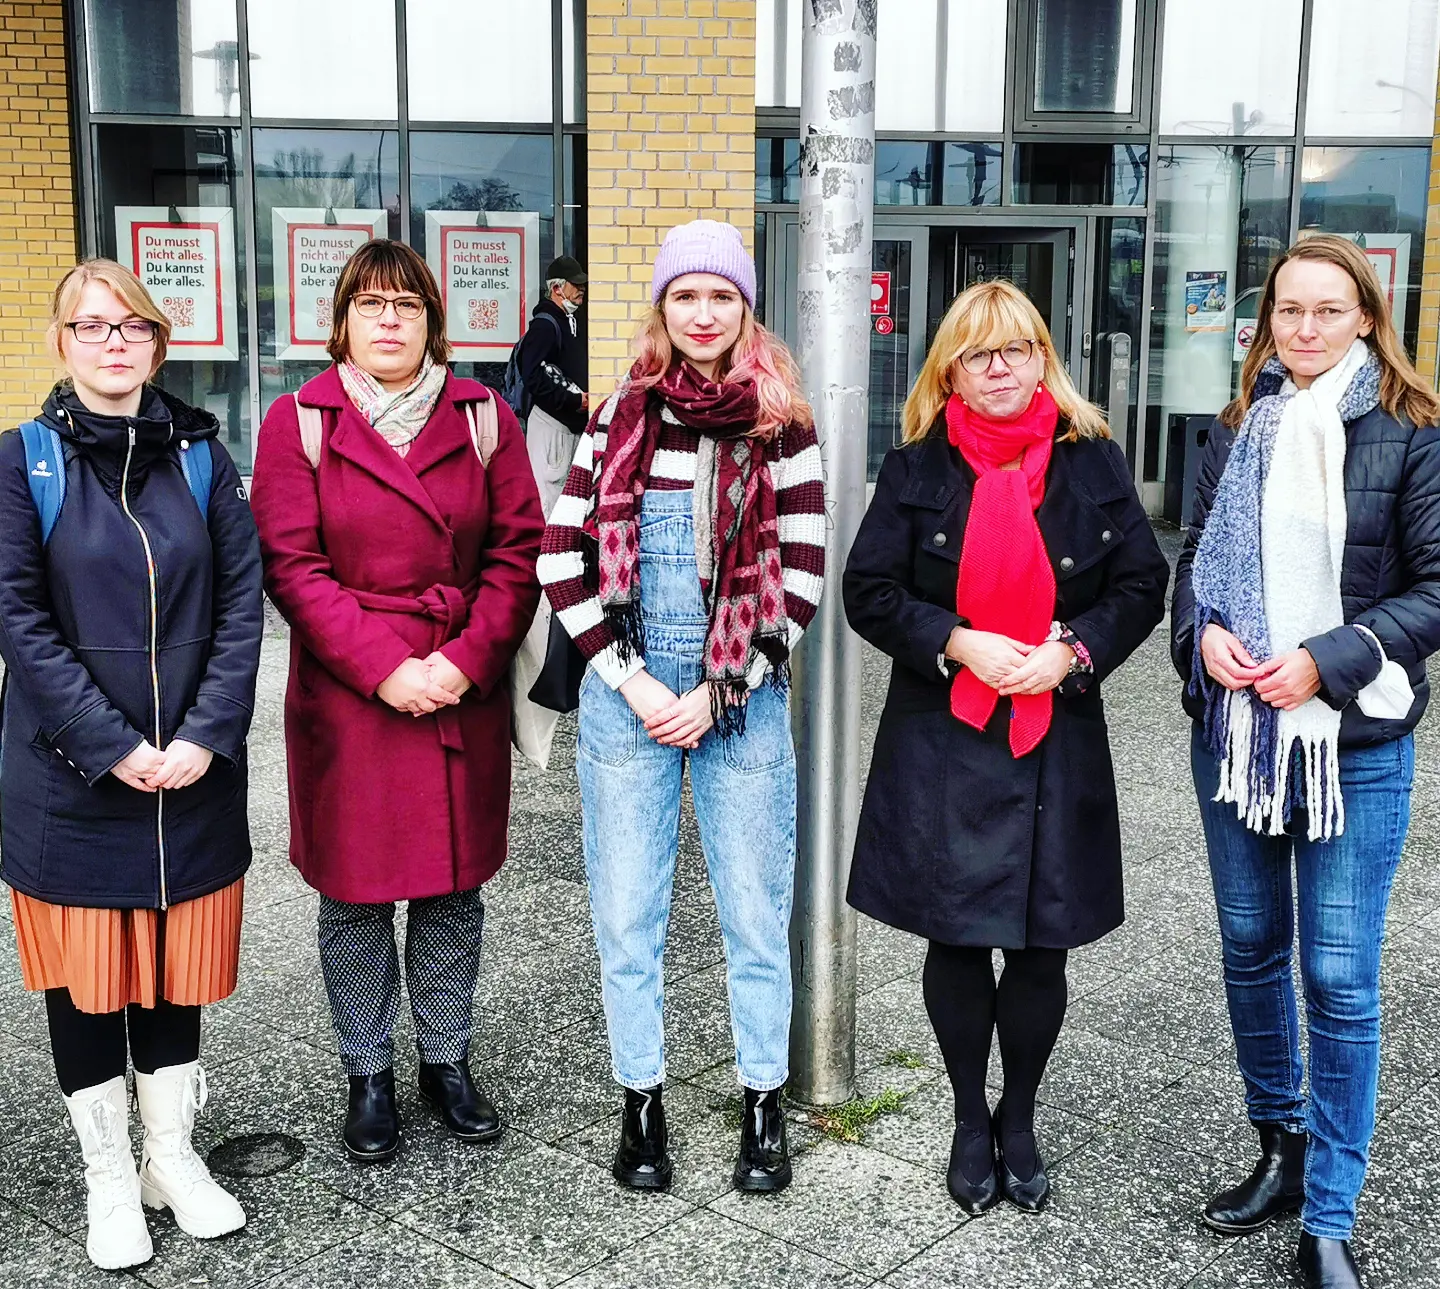 Gruppenbild vor der Fahnenstange am Rathaus Hellersdorf von Chantal Münster, Anja Molnar, Luise Lehmann, Juliane WItt und Nicole Bienge.